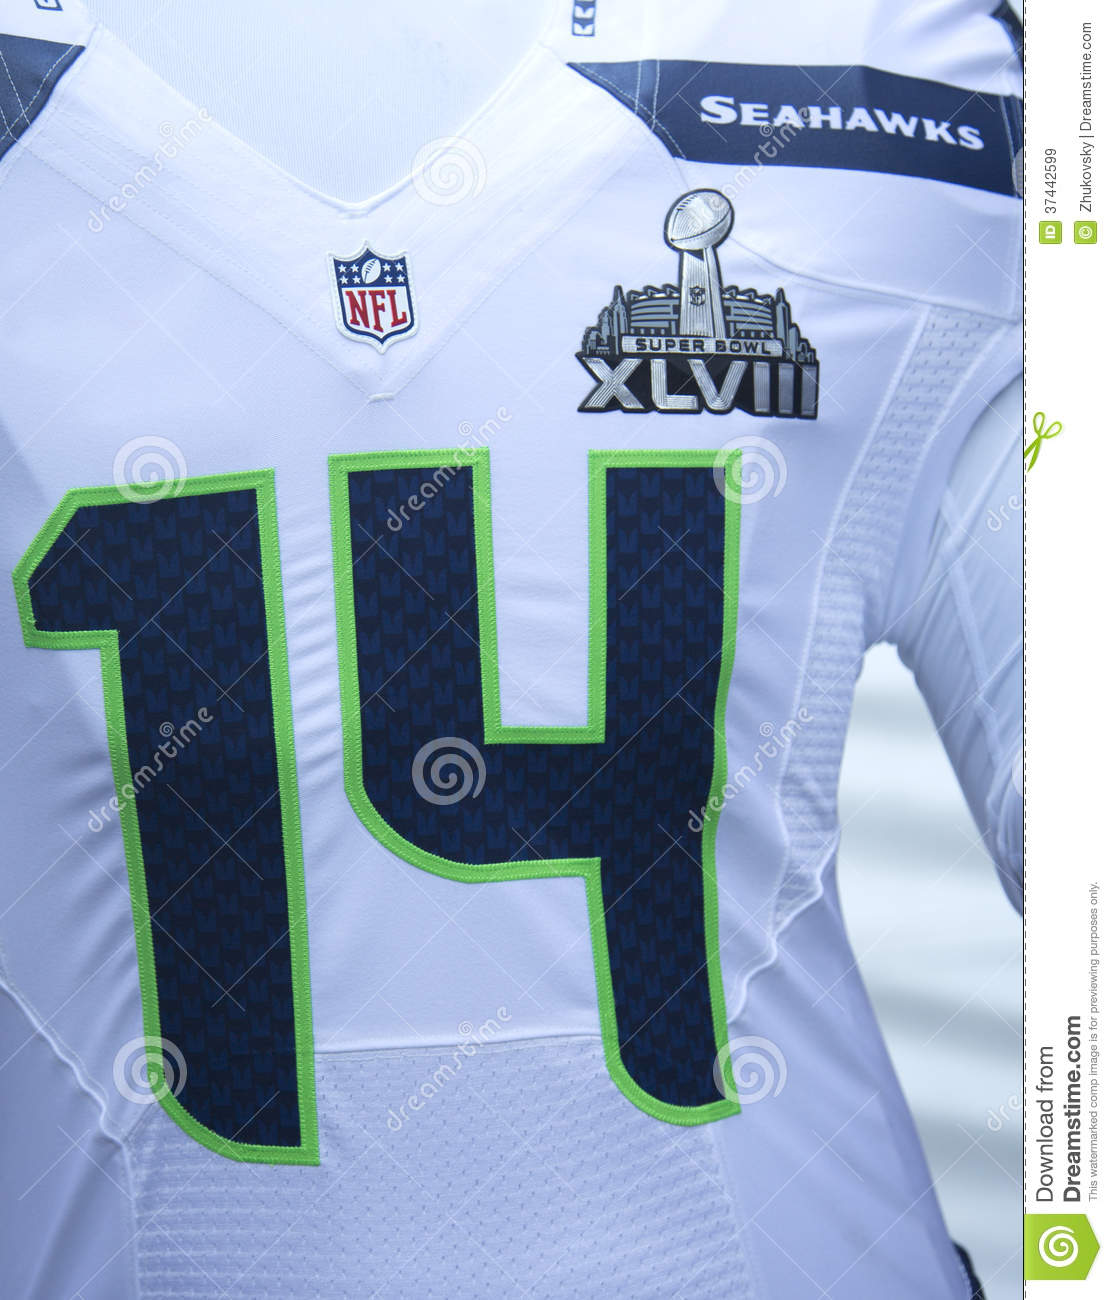 Super Bowl Trophy Clipart 2014 Uniform With Super Bowl